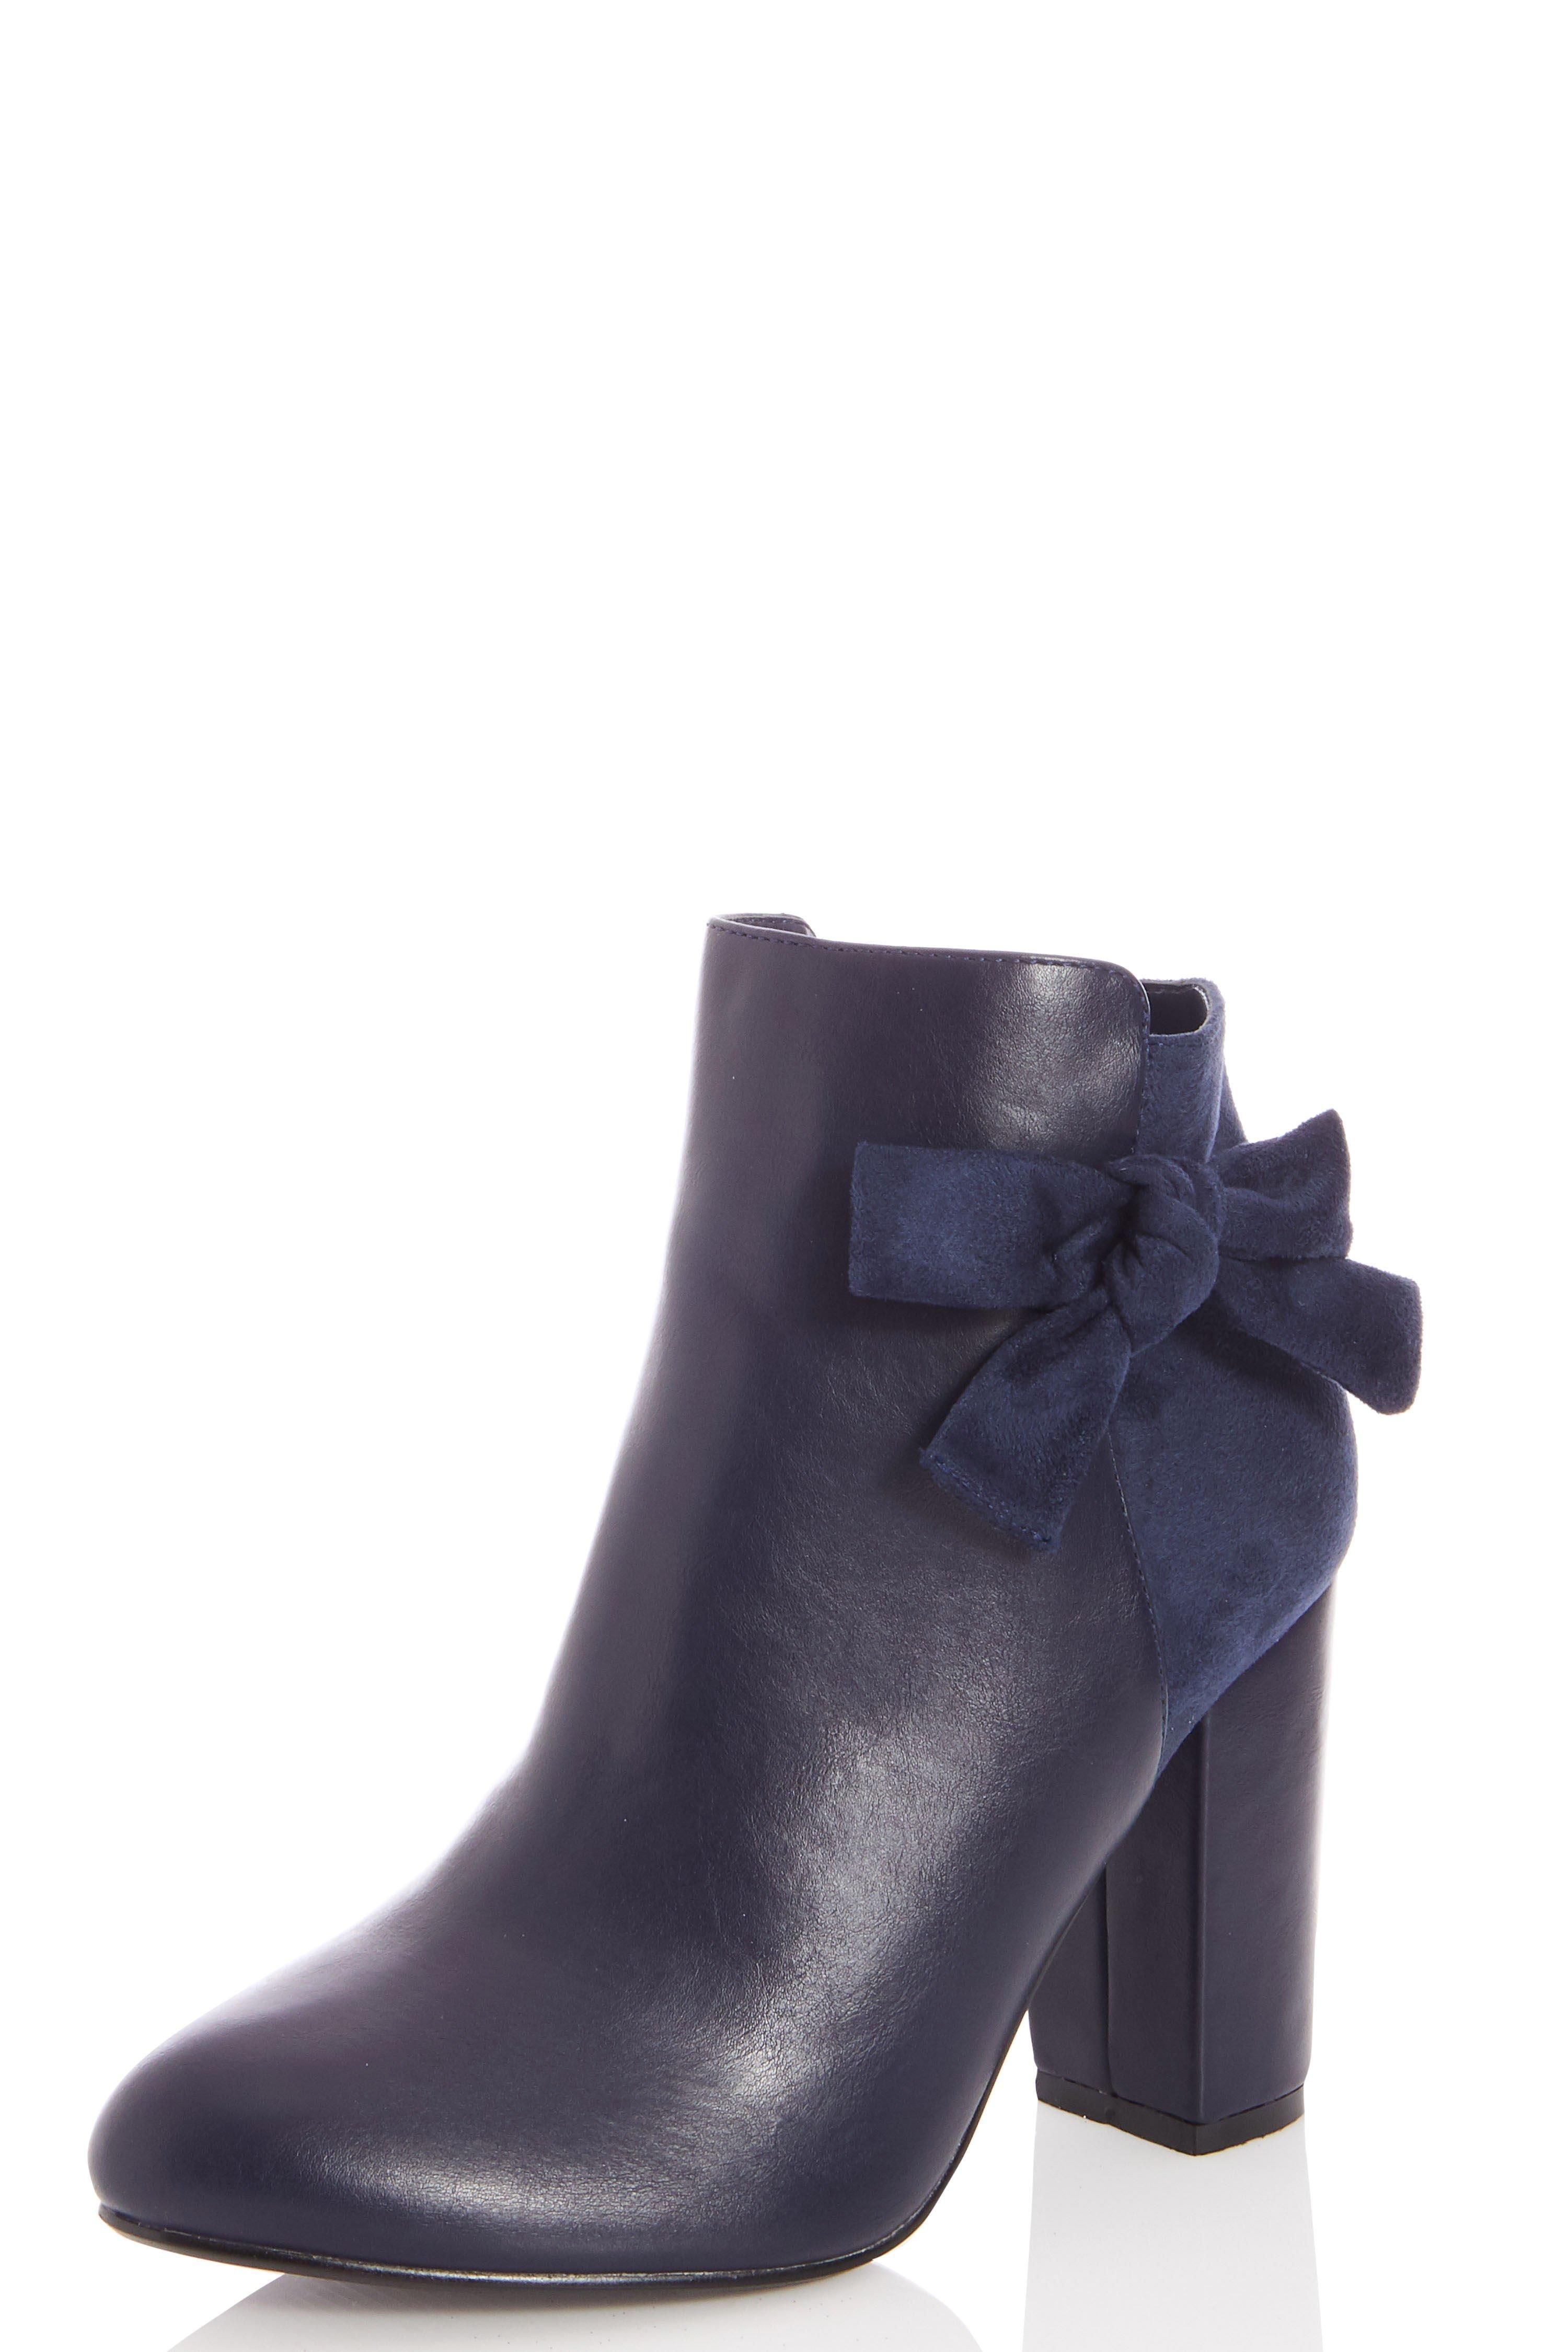 - Bow feature  - Leather look  - Faux suede  - Block heel  - Inner zip fasten  - Heel height: 4